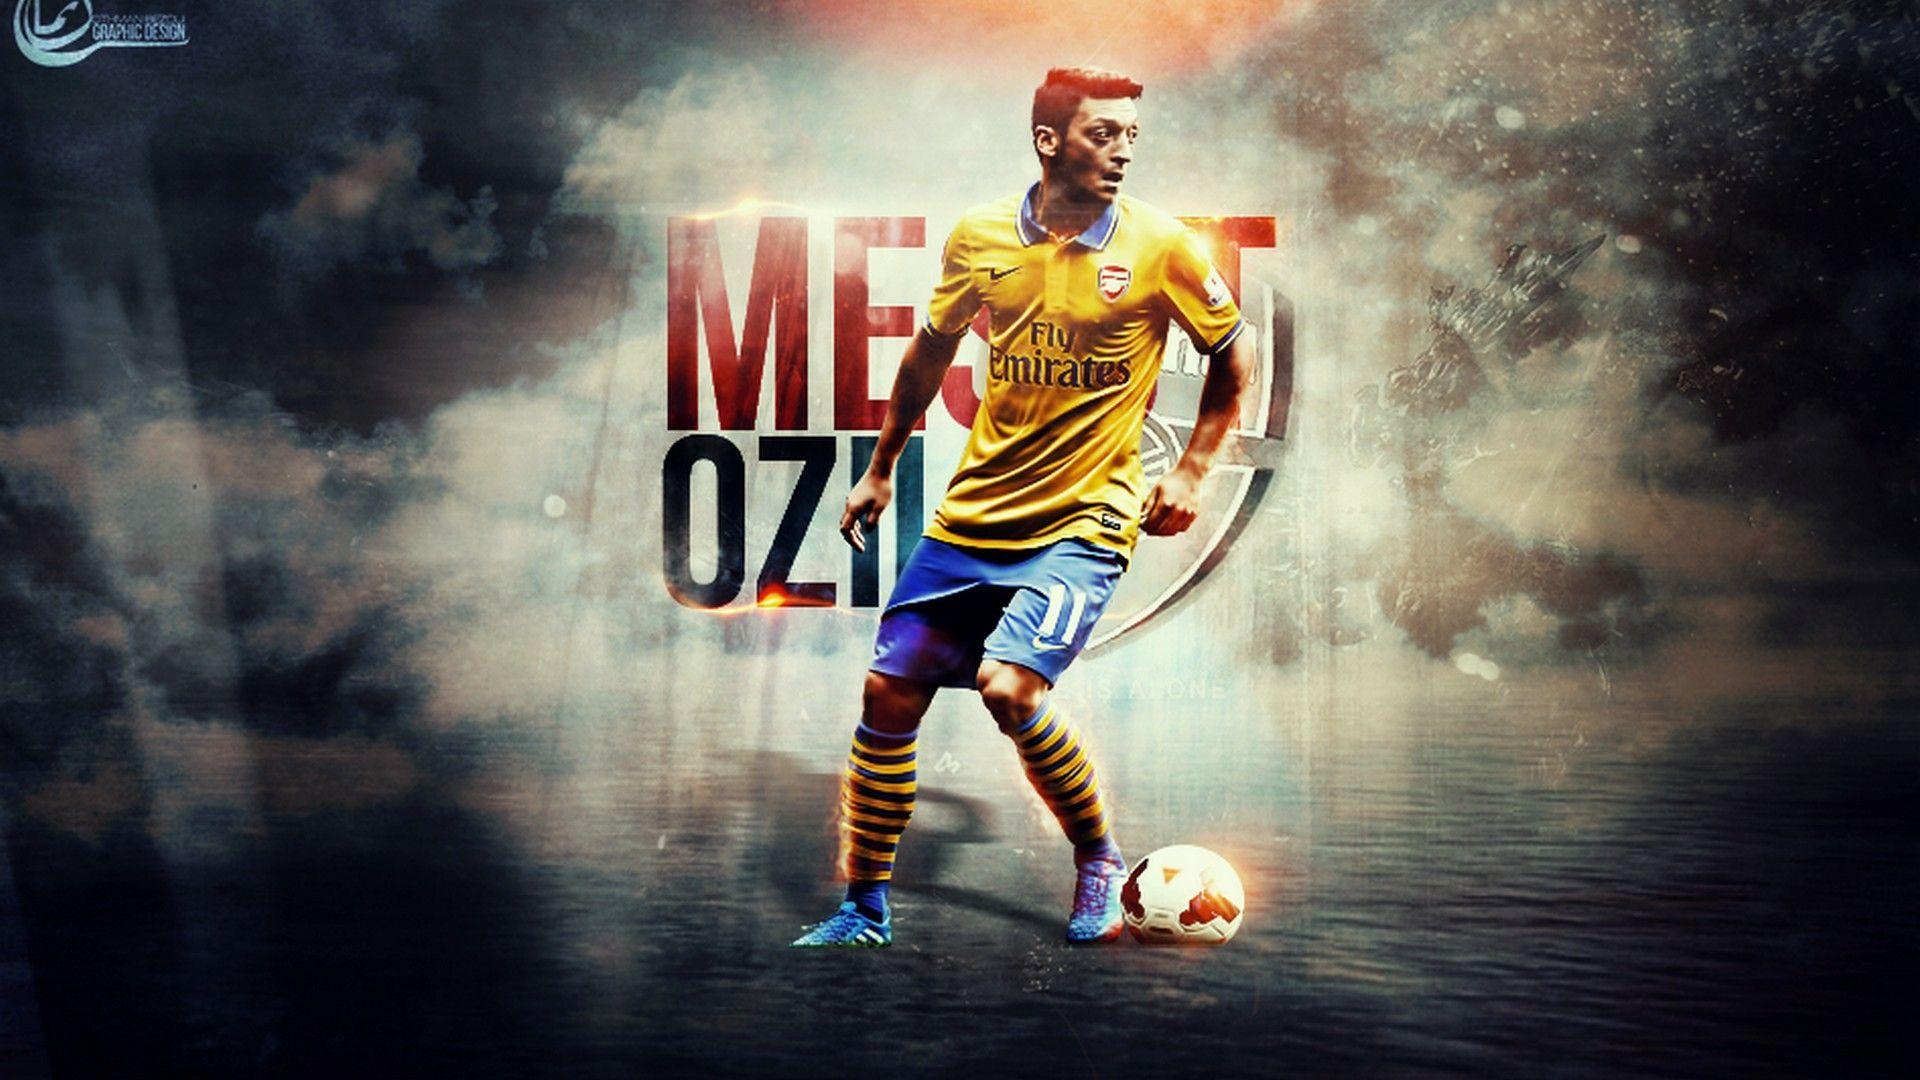 Mesut Ozil Arsenal Wallpaper Live Wallpaper HD. Arsenal wallpaper, Mesut ozil arsenal, Arsenal